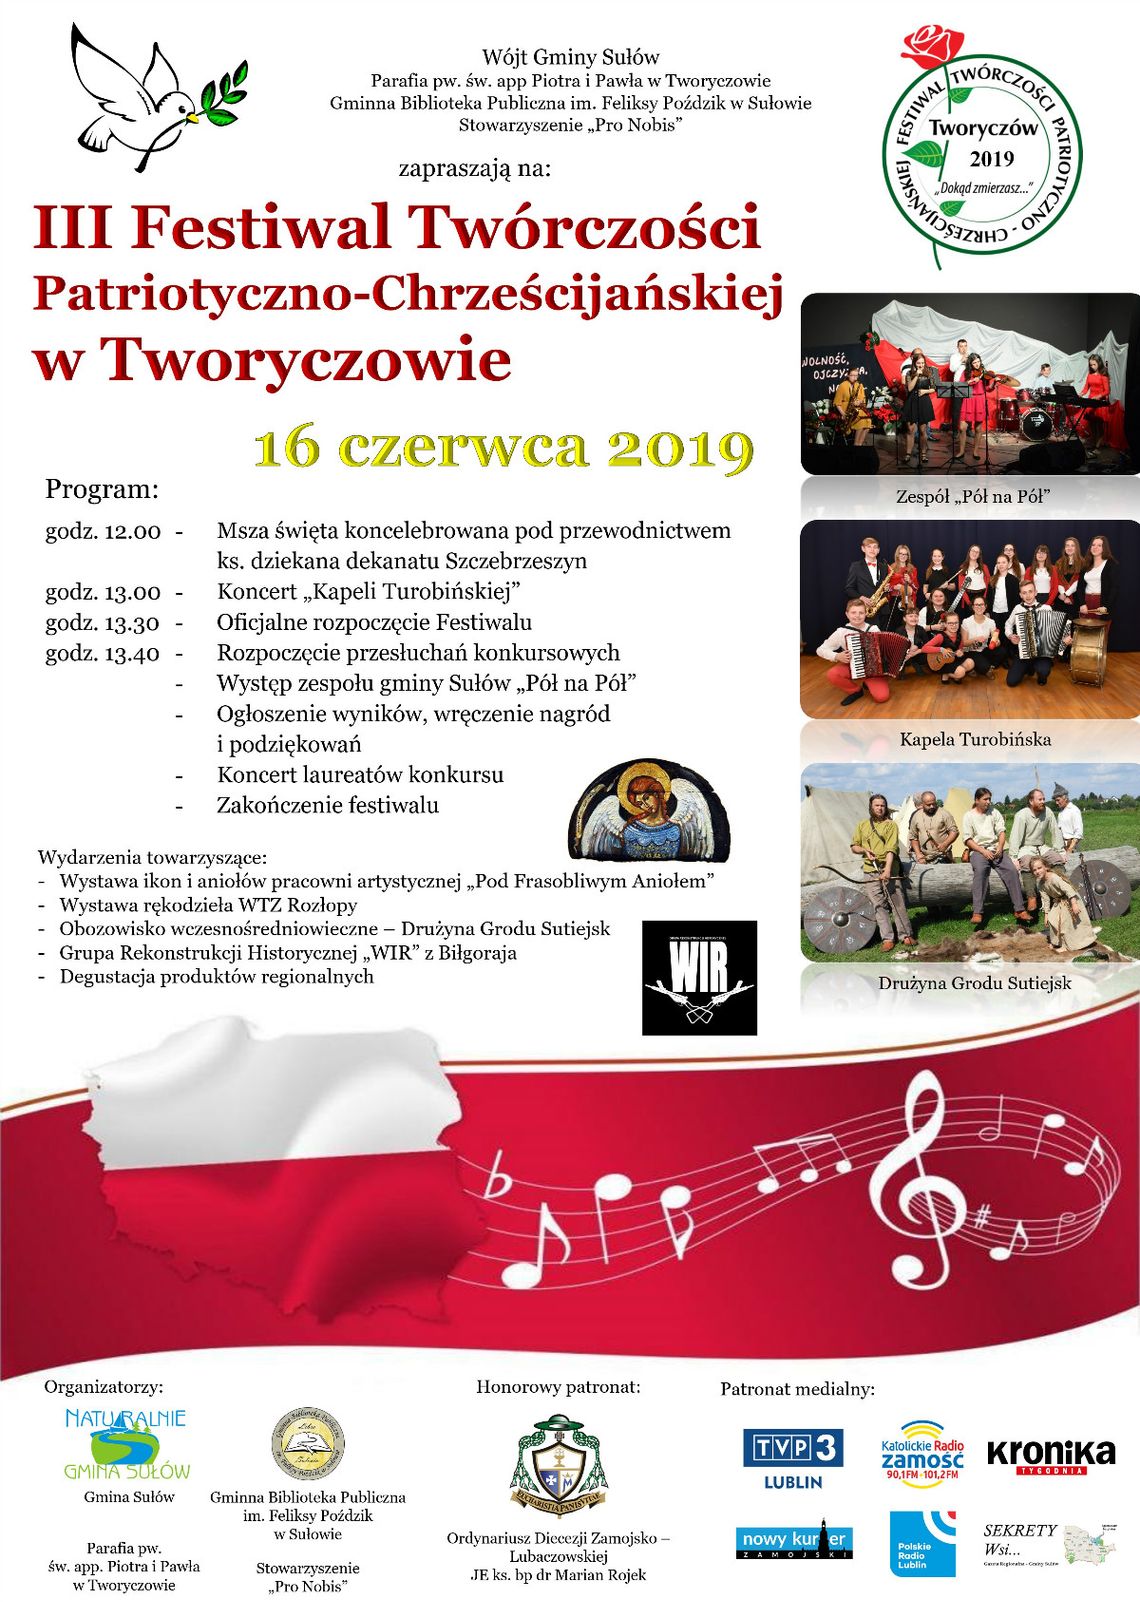 Gm. Sułów: Festiwal patriotyczno-chrześcijański w Tworyczowie